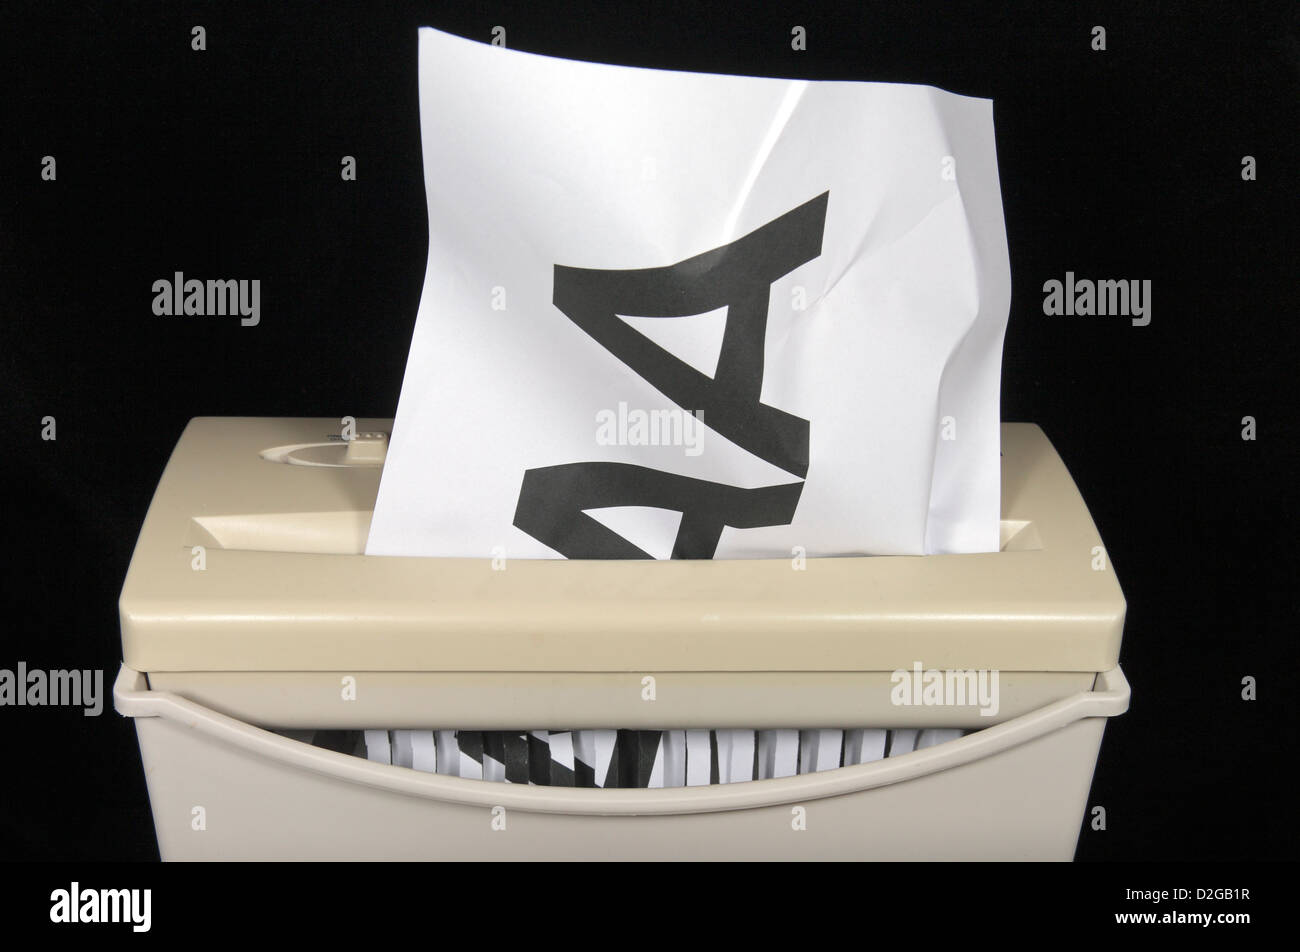 Un AAA imprimé sur du papier A4 d'être déchiquetés, symbolisant une banalisation du haut cote de AAA. Banque D'Images